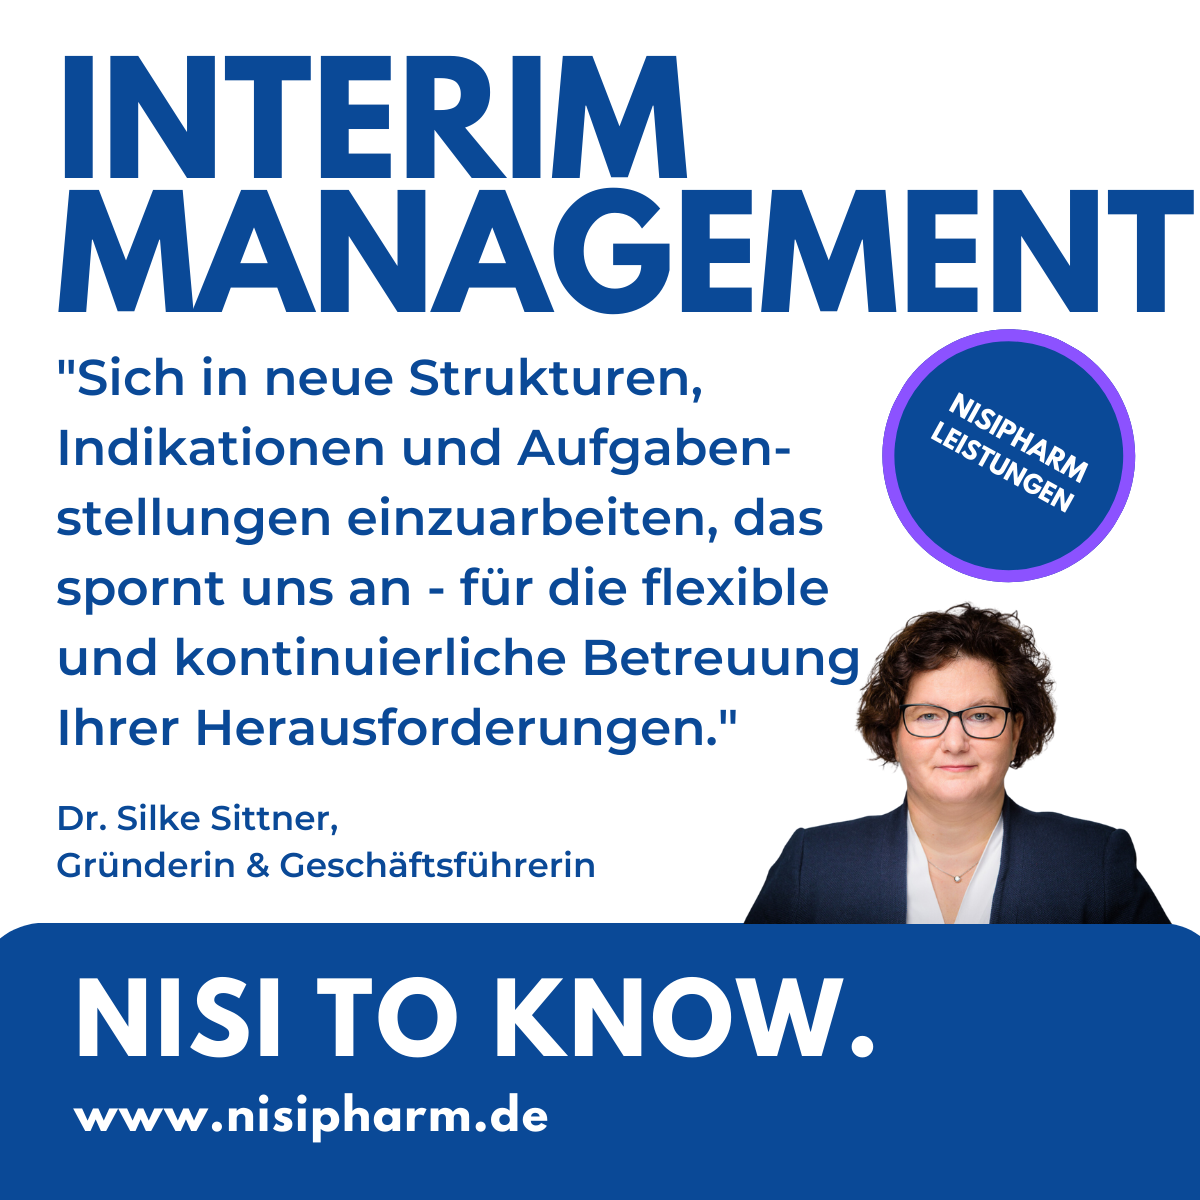 Hinweis auf die Leistung Interimmanagement der Nisipharm GmbH